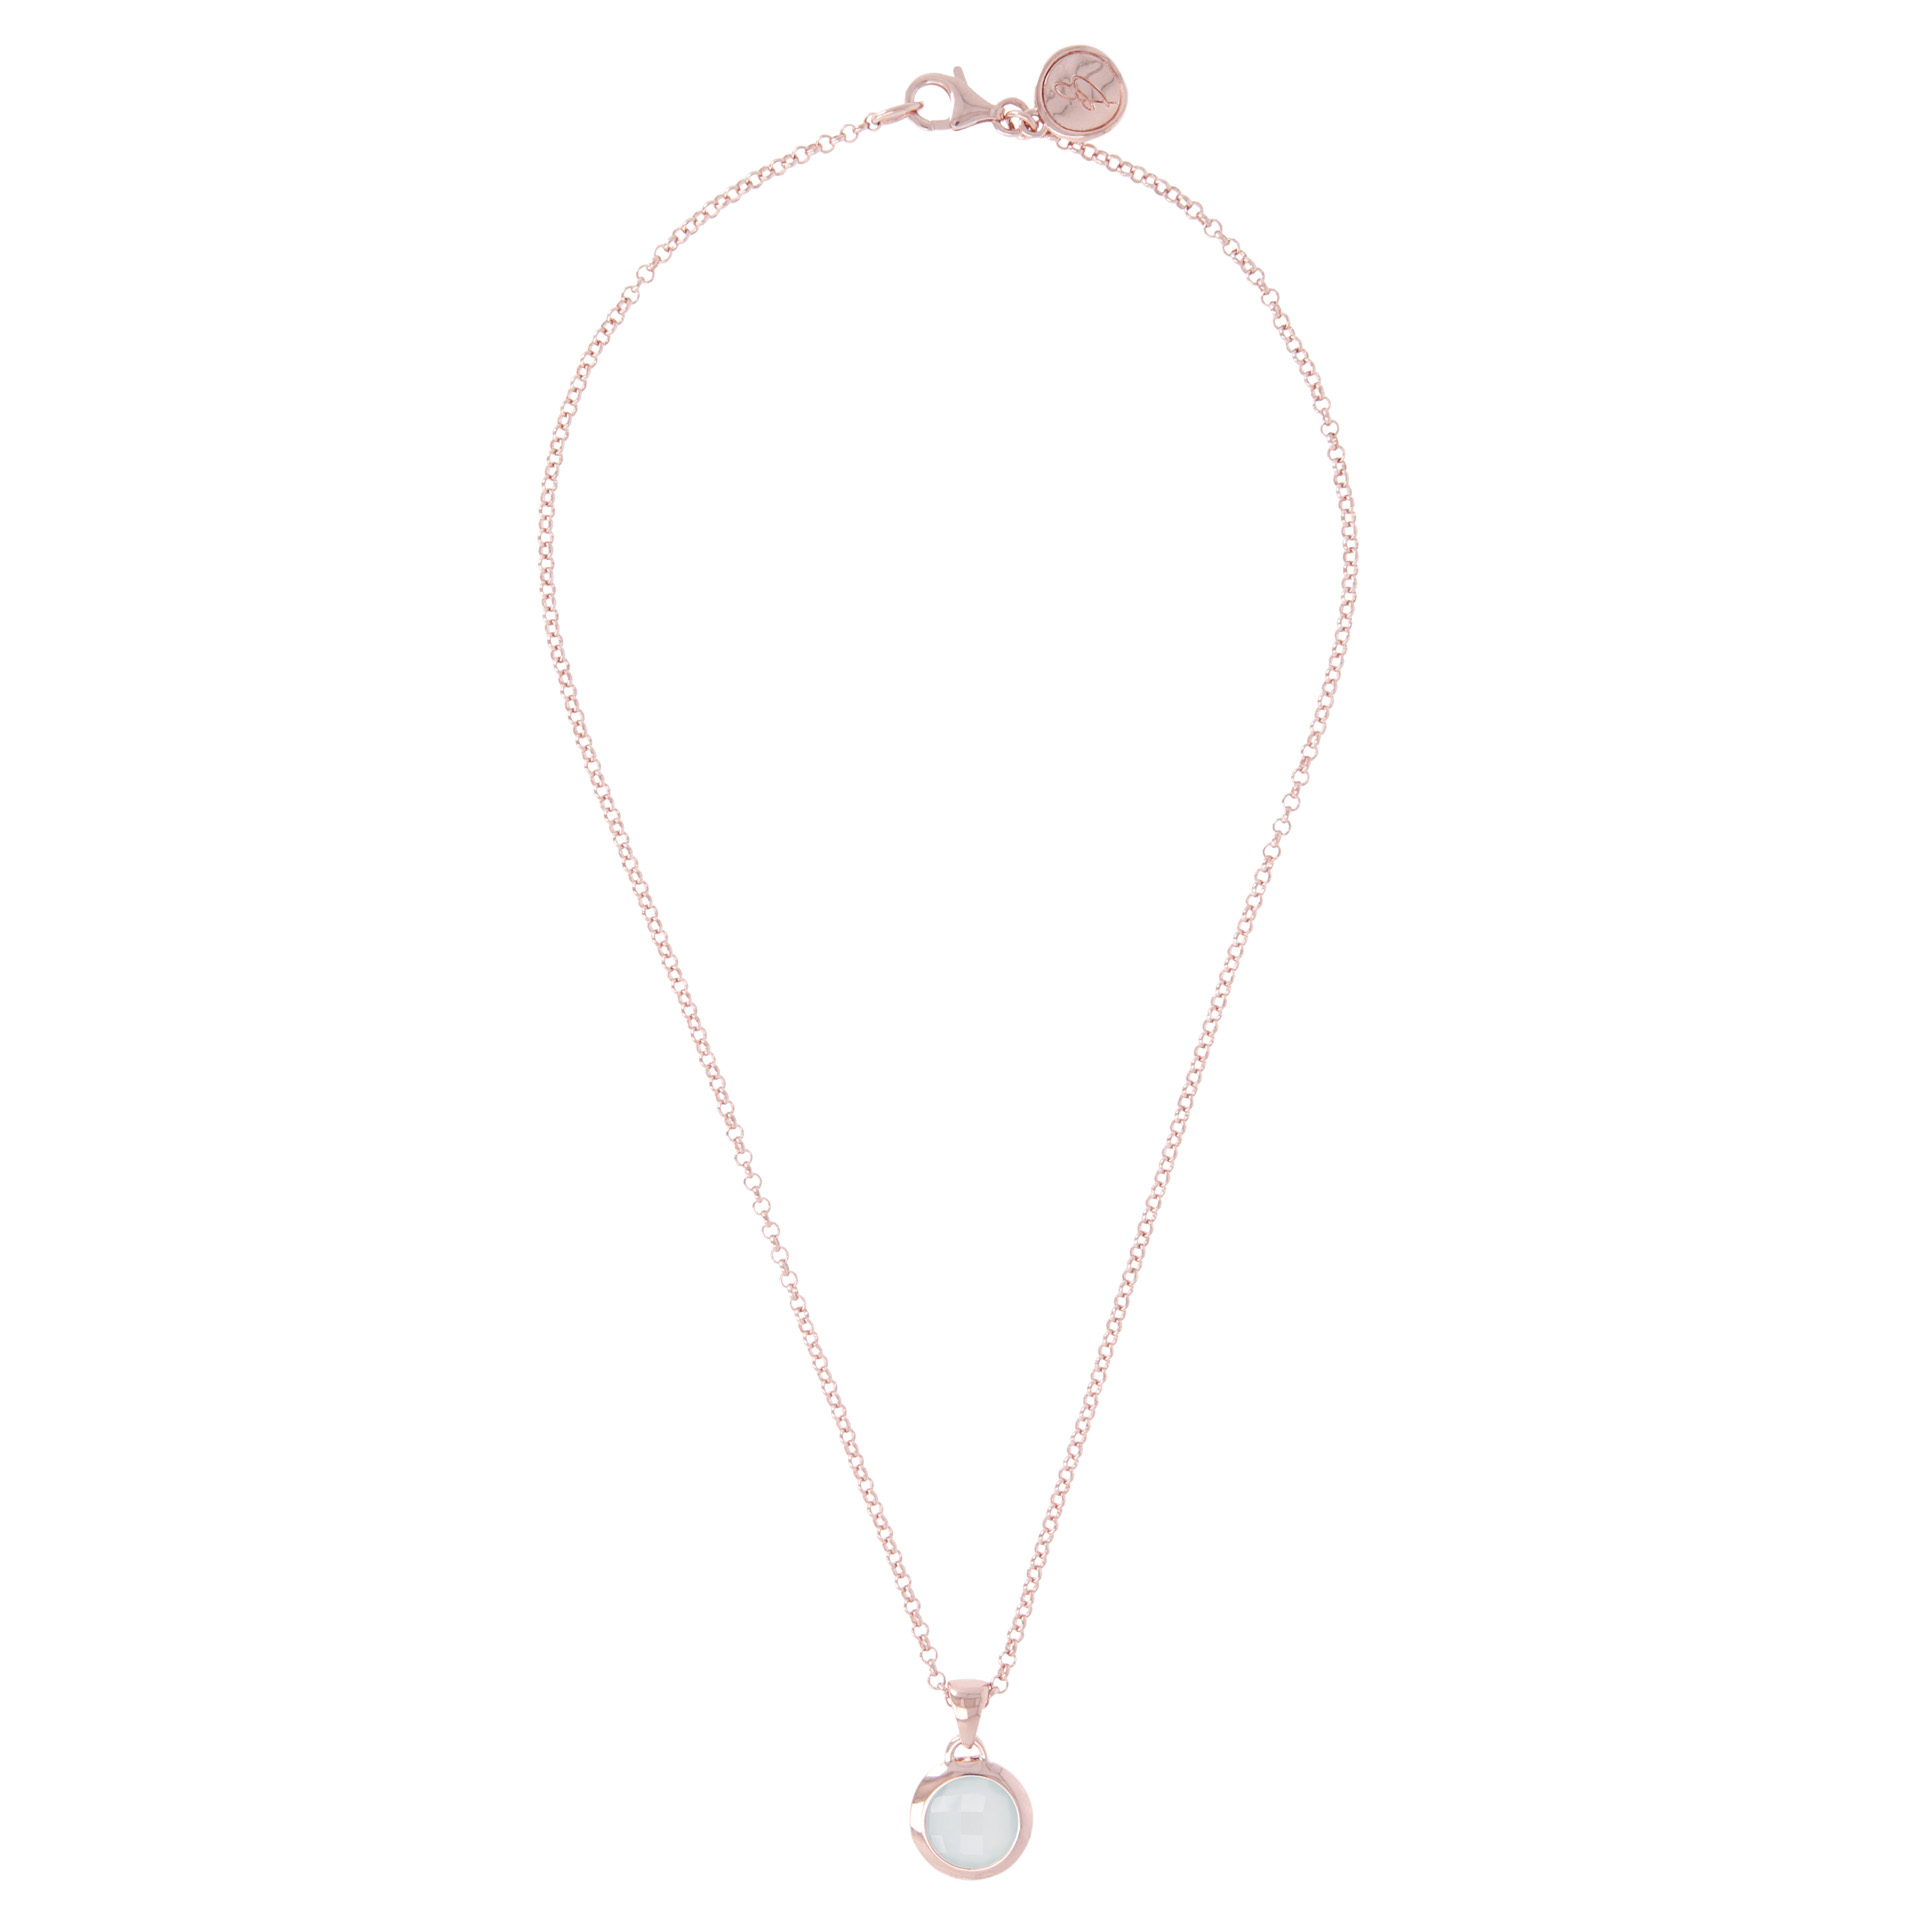 Rosé collier met chalcedoon WSBZ00035